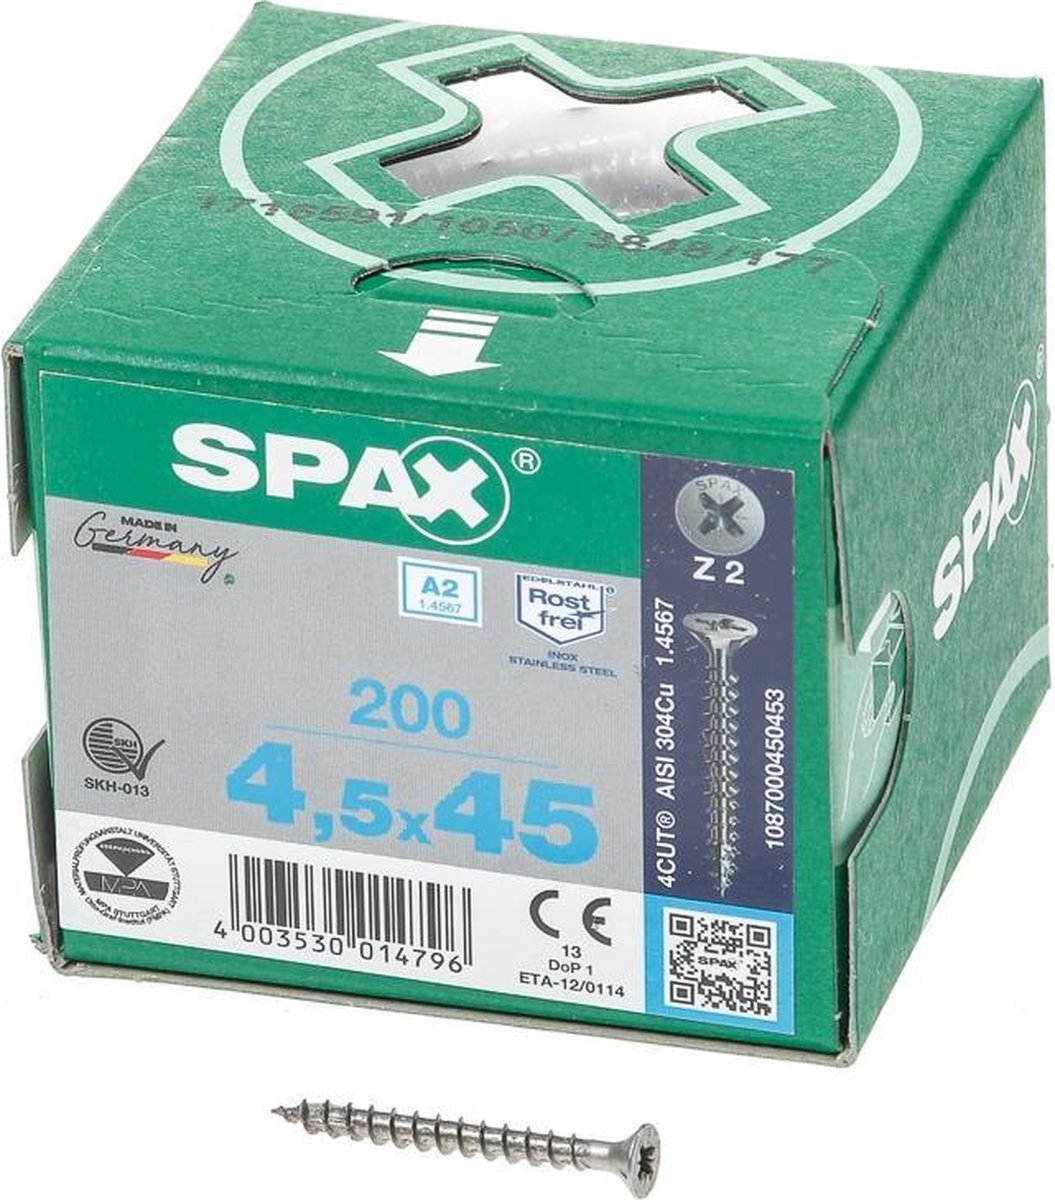 Spax Spaanplaatschroef RVS PK 4.5 x 45 - 200 stuks - Spax